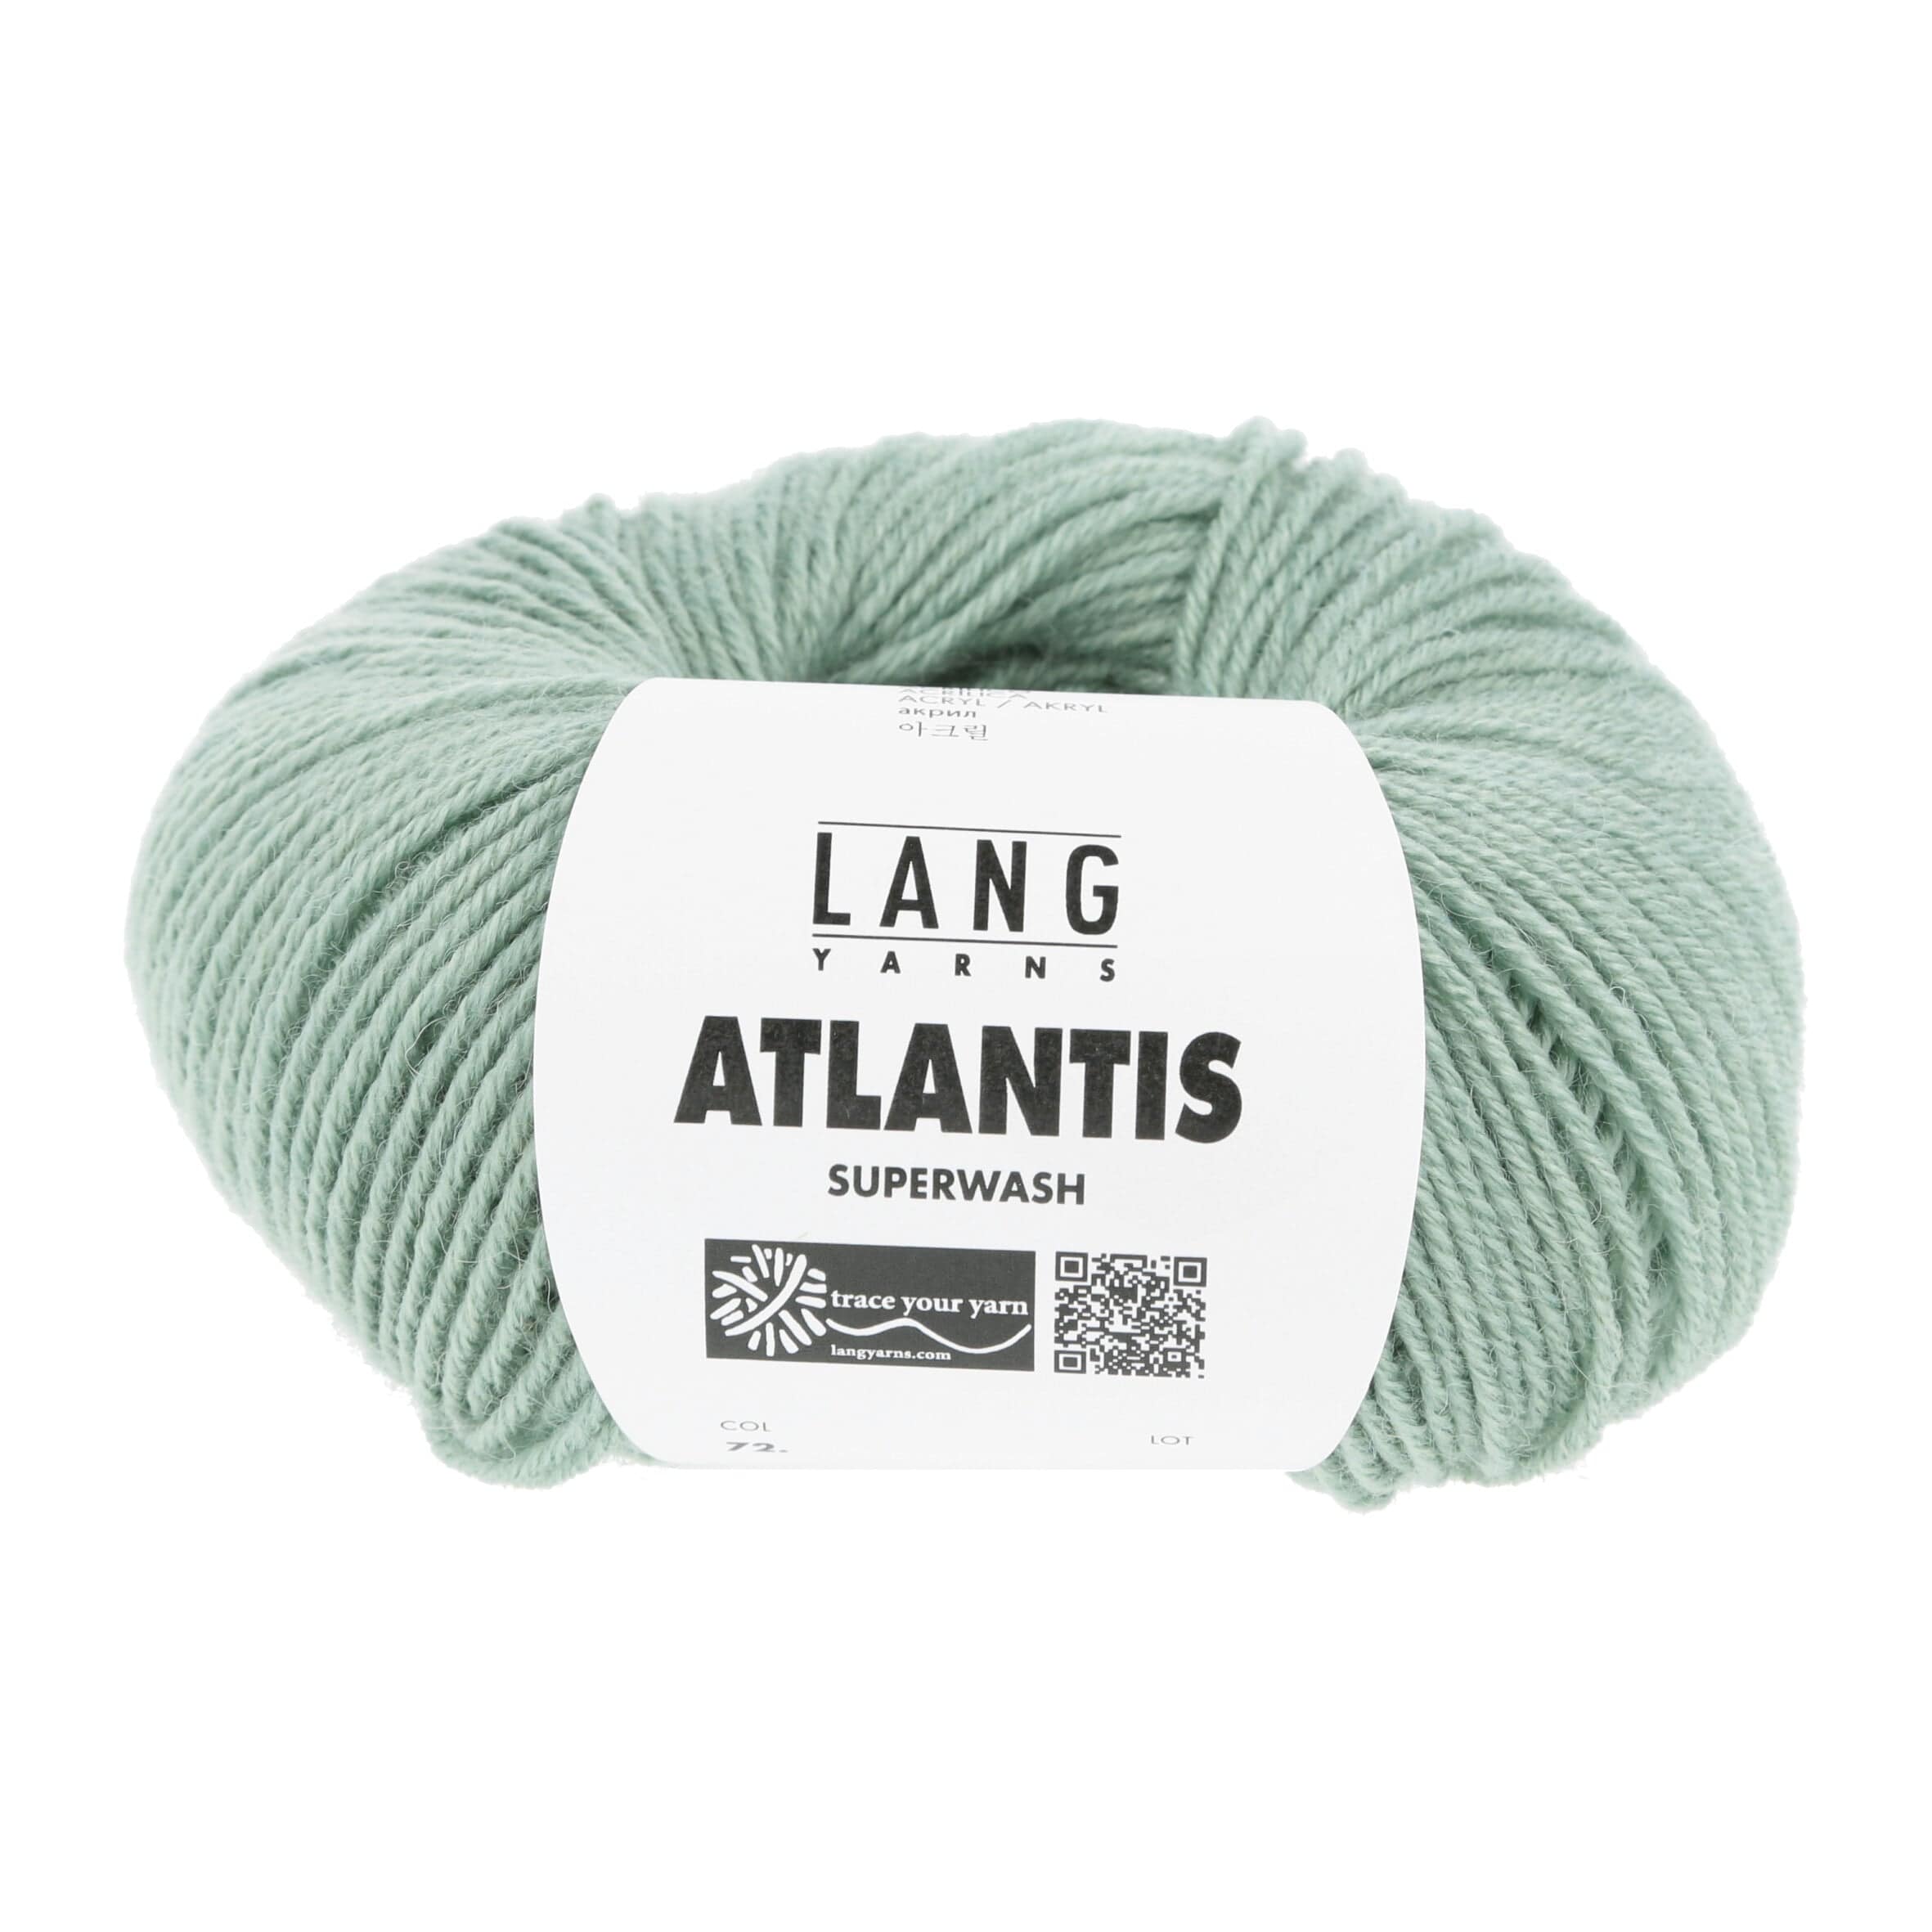 ATLANTIS von LANG YARNS jetzt online kaufen bei OONIQUE